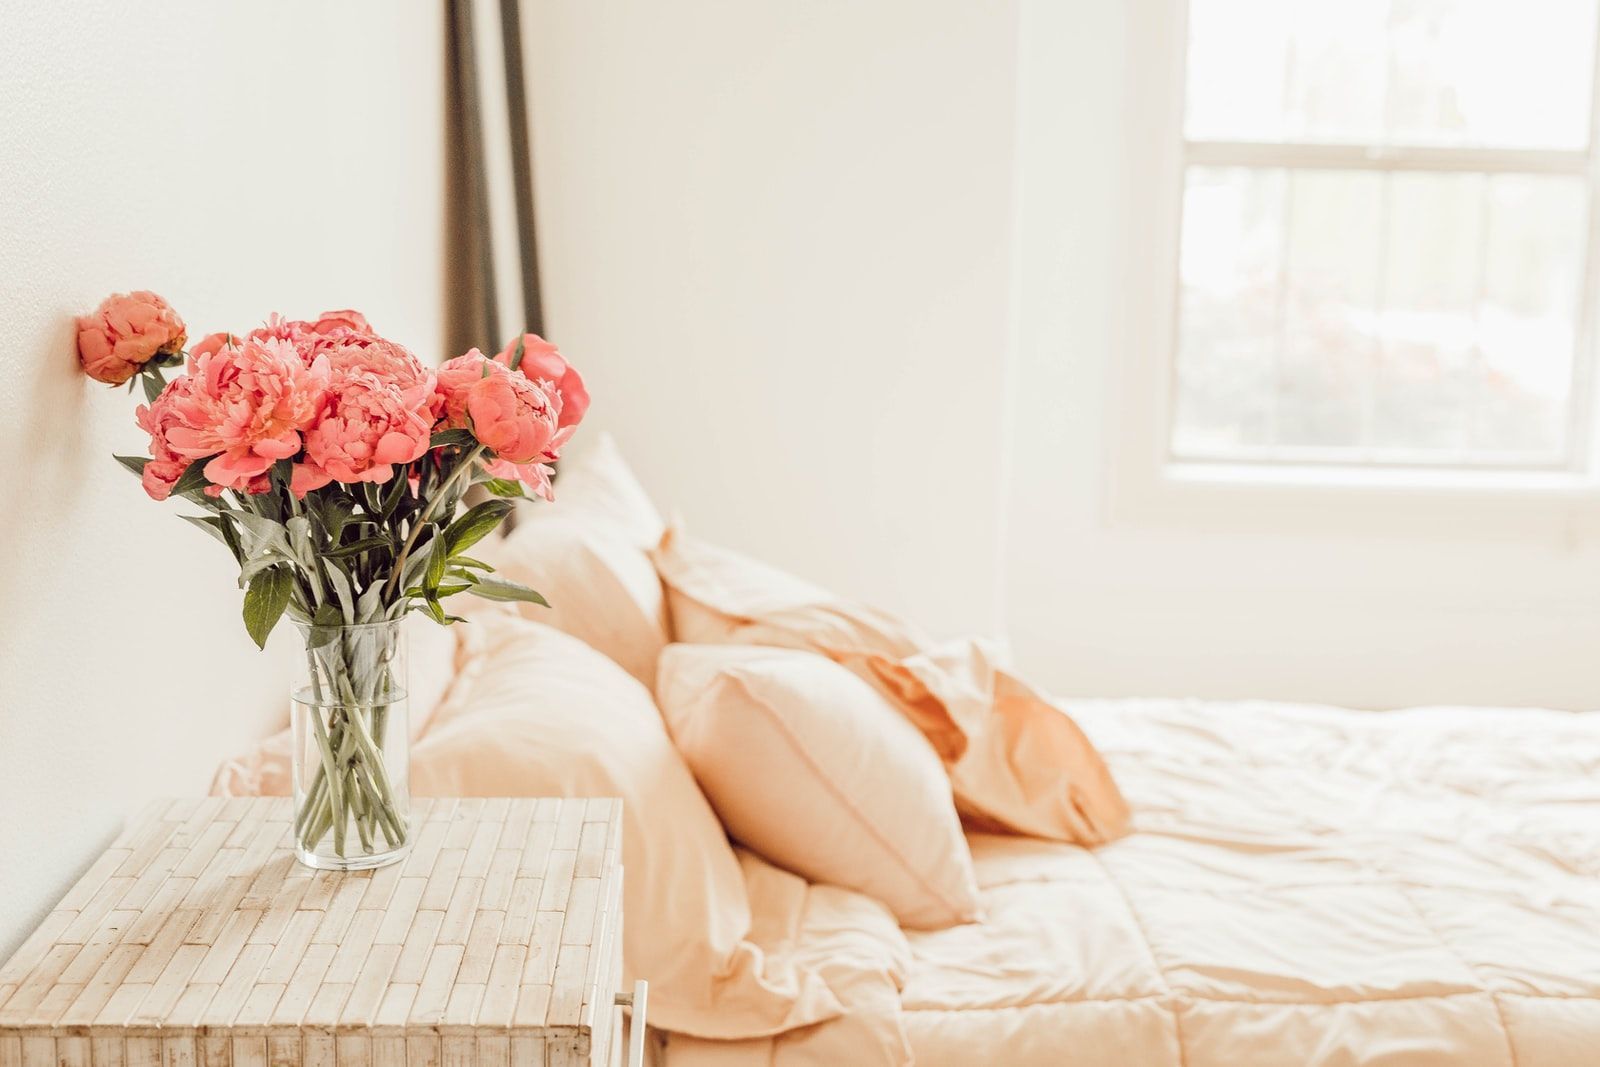 chambre à coucher lumineuse et romantique avec une literie pêche et des fleurs dans un vase sur la table de chevet